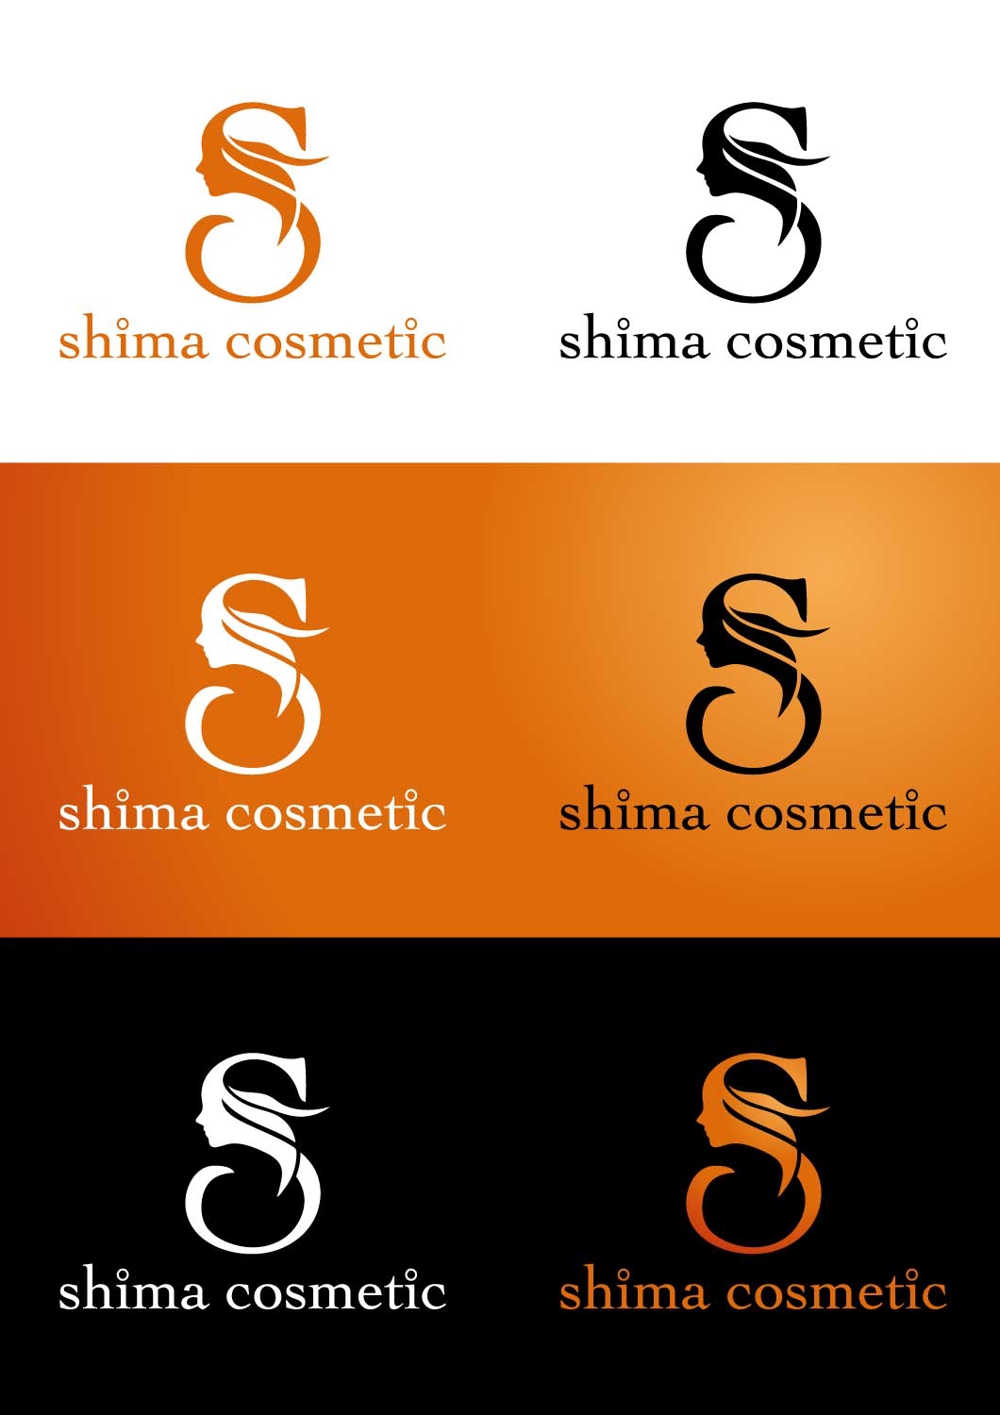 化粧品工場「株式会社しまコスメティック」のロゴデザイン